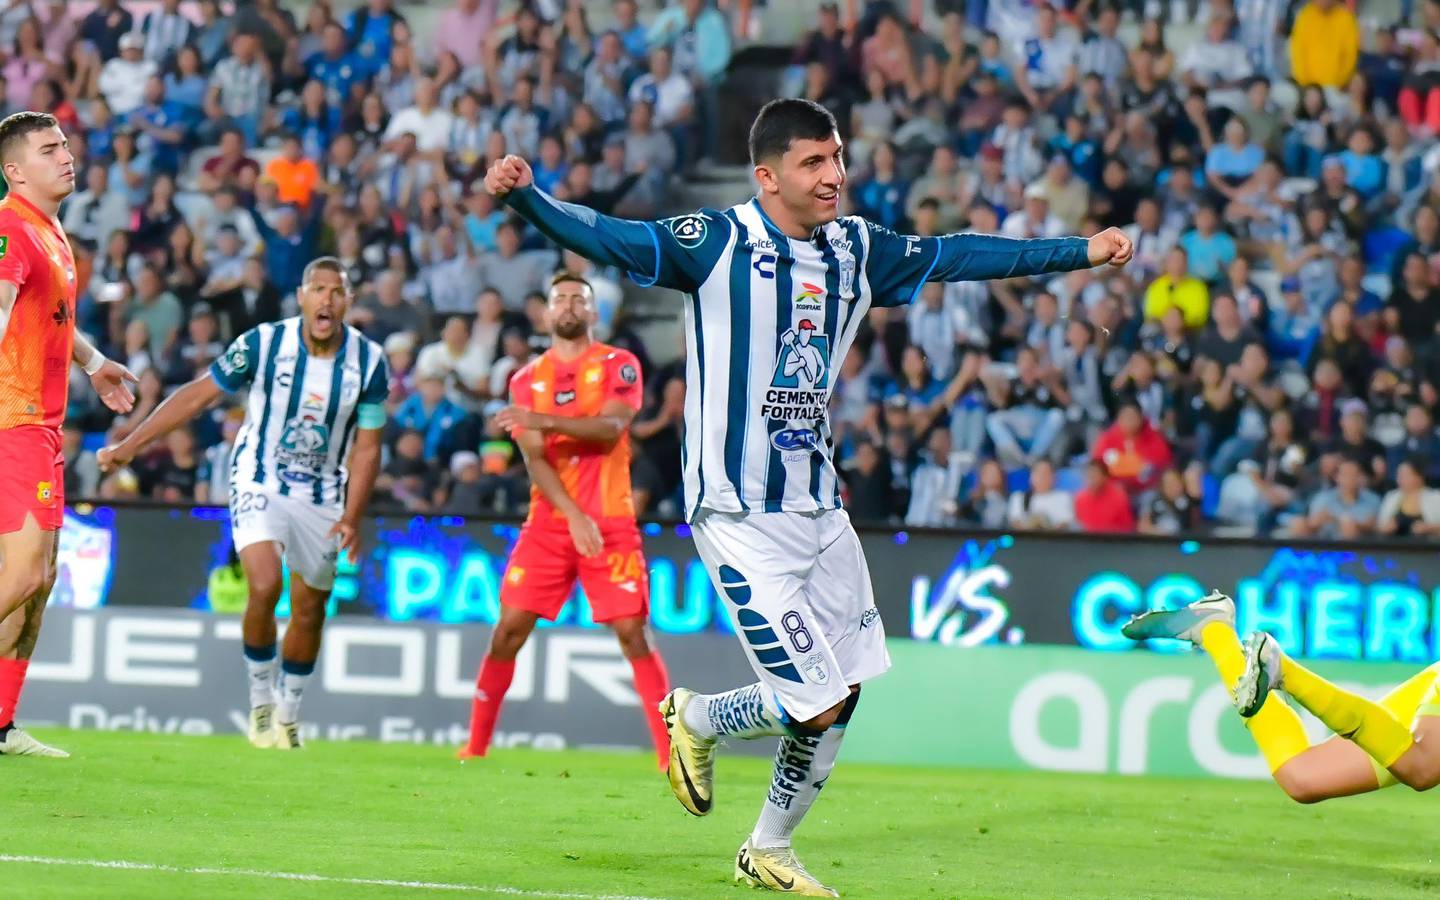 Pachuca no tuvo ningún inconveniente en avanzar a las semifinales de la Copa de Campeones de Concacaf, al ganarle los dos partidos a Herediano.